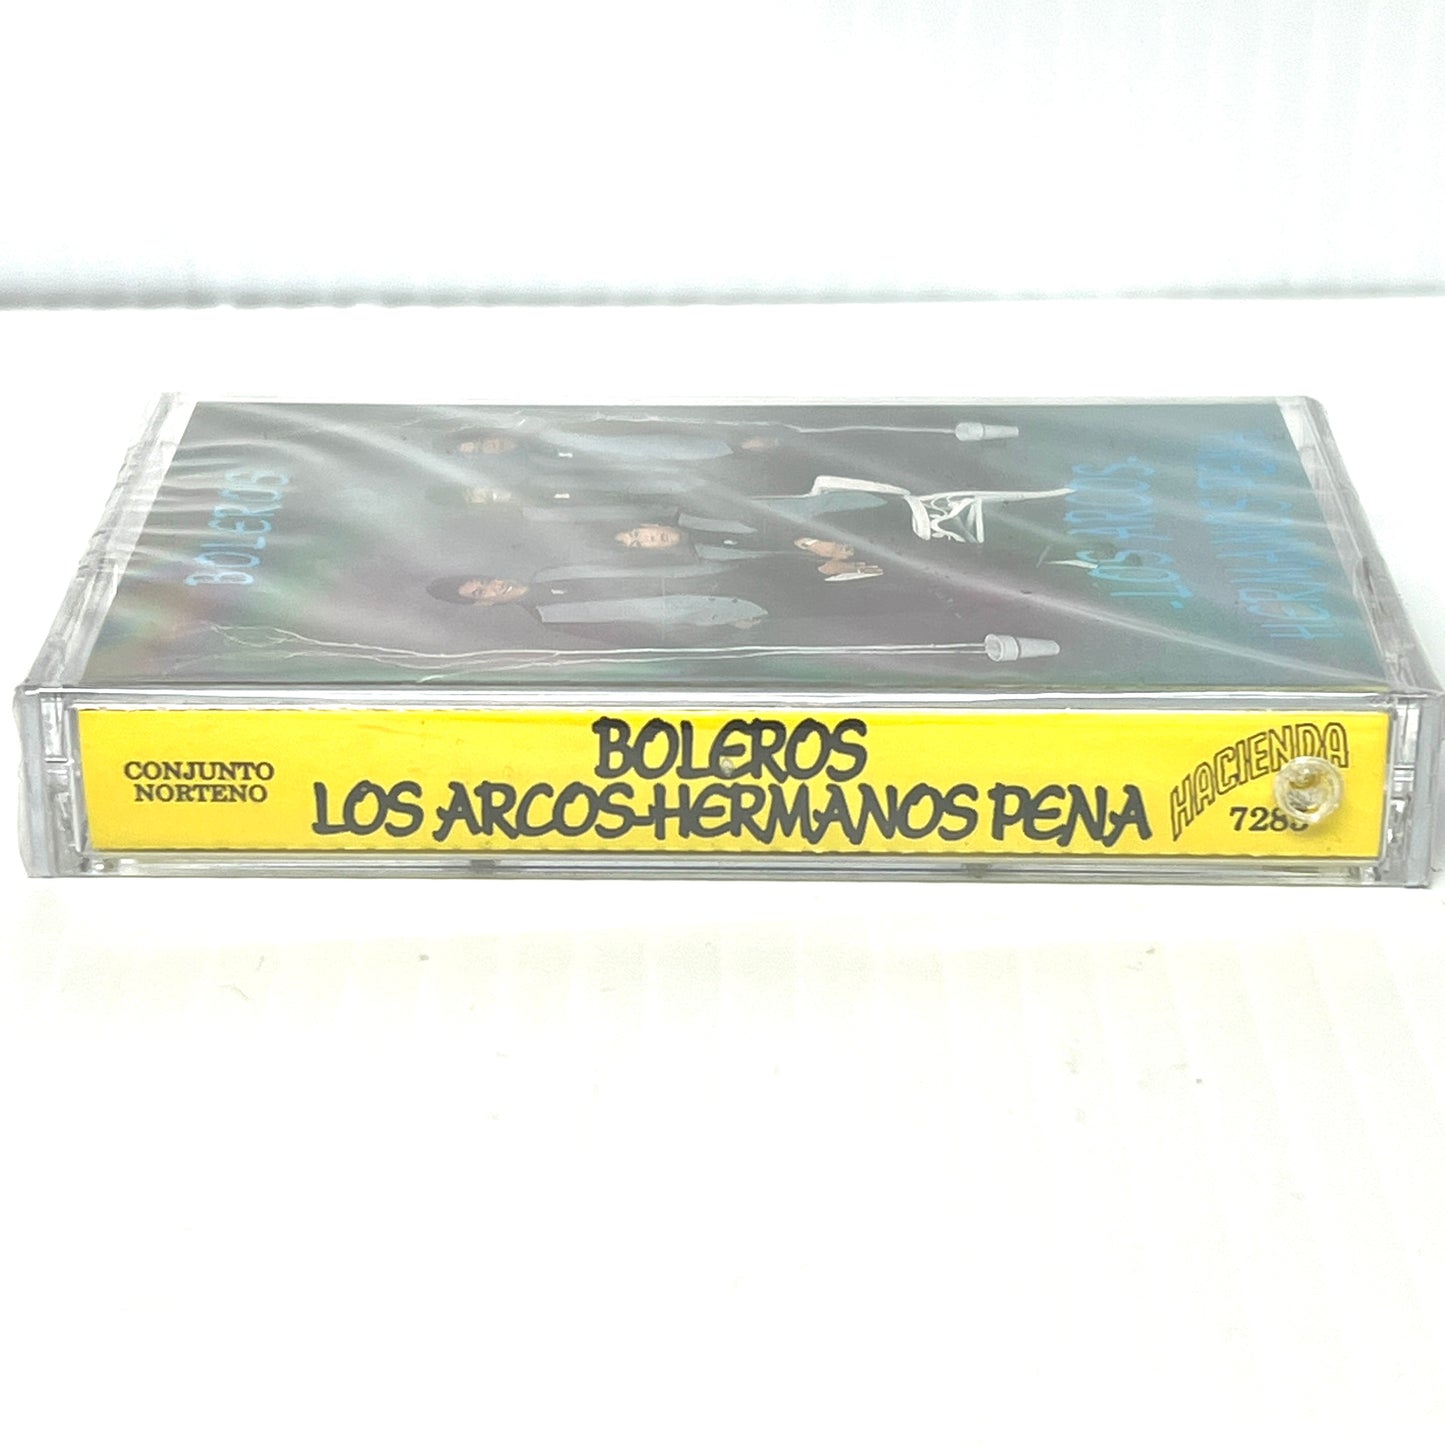 Los Arcos Hermanos Peña - Boleros (Cassette)